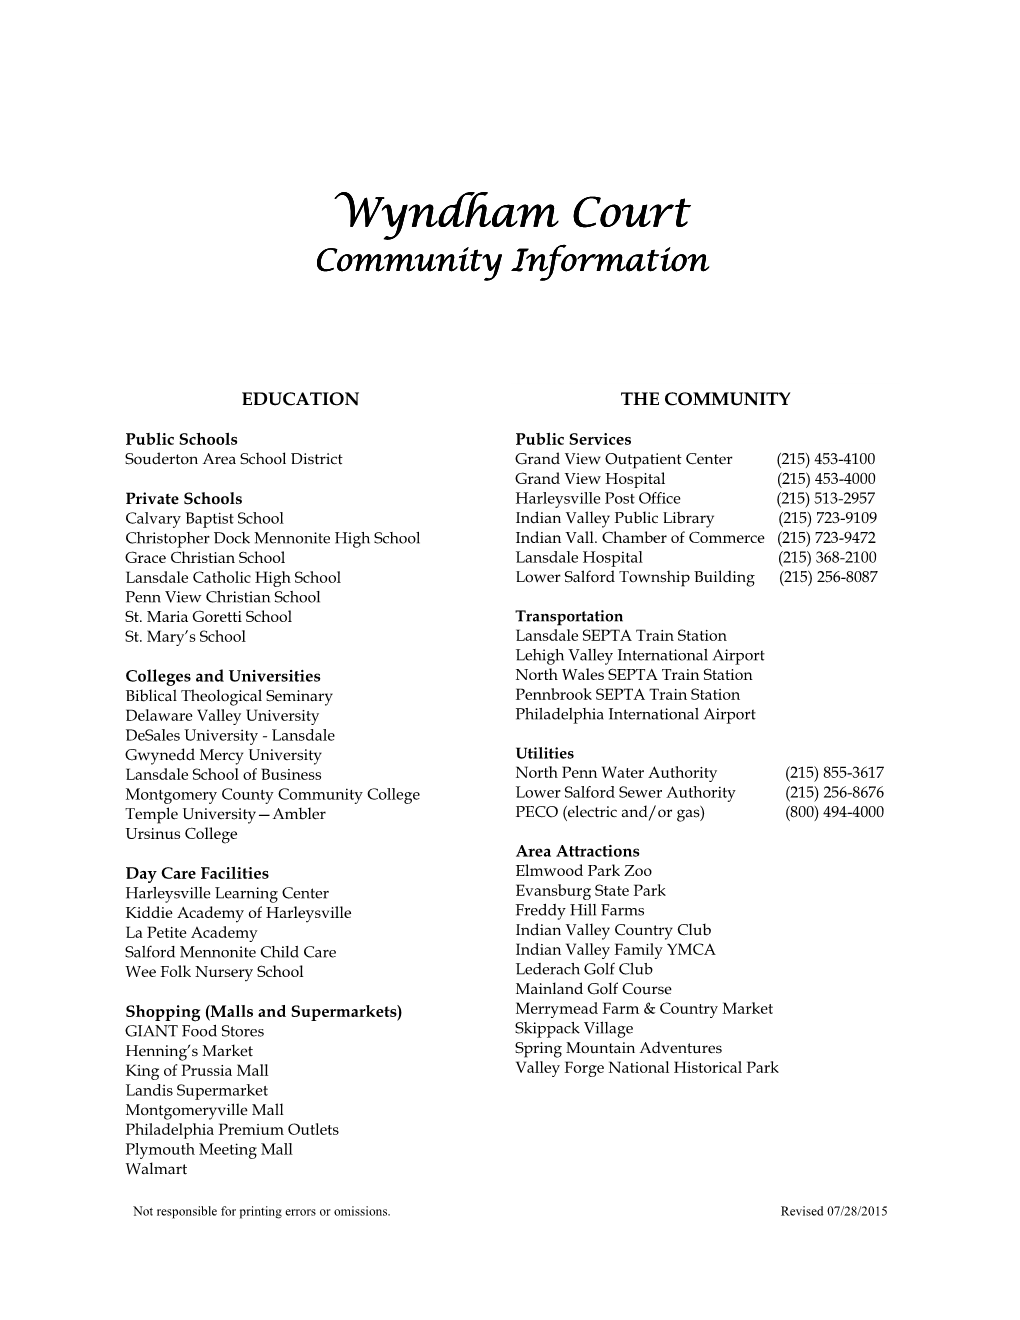 Wyndham Court Wyndham Court